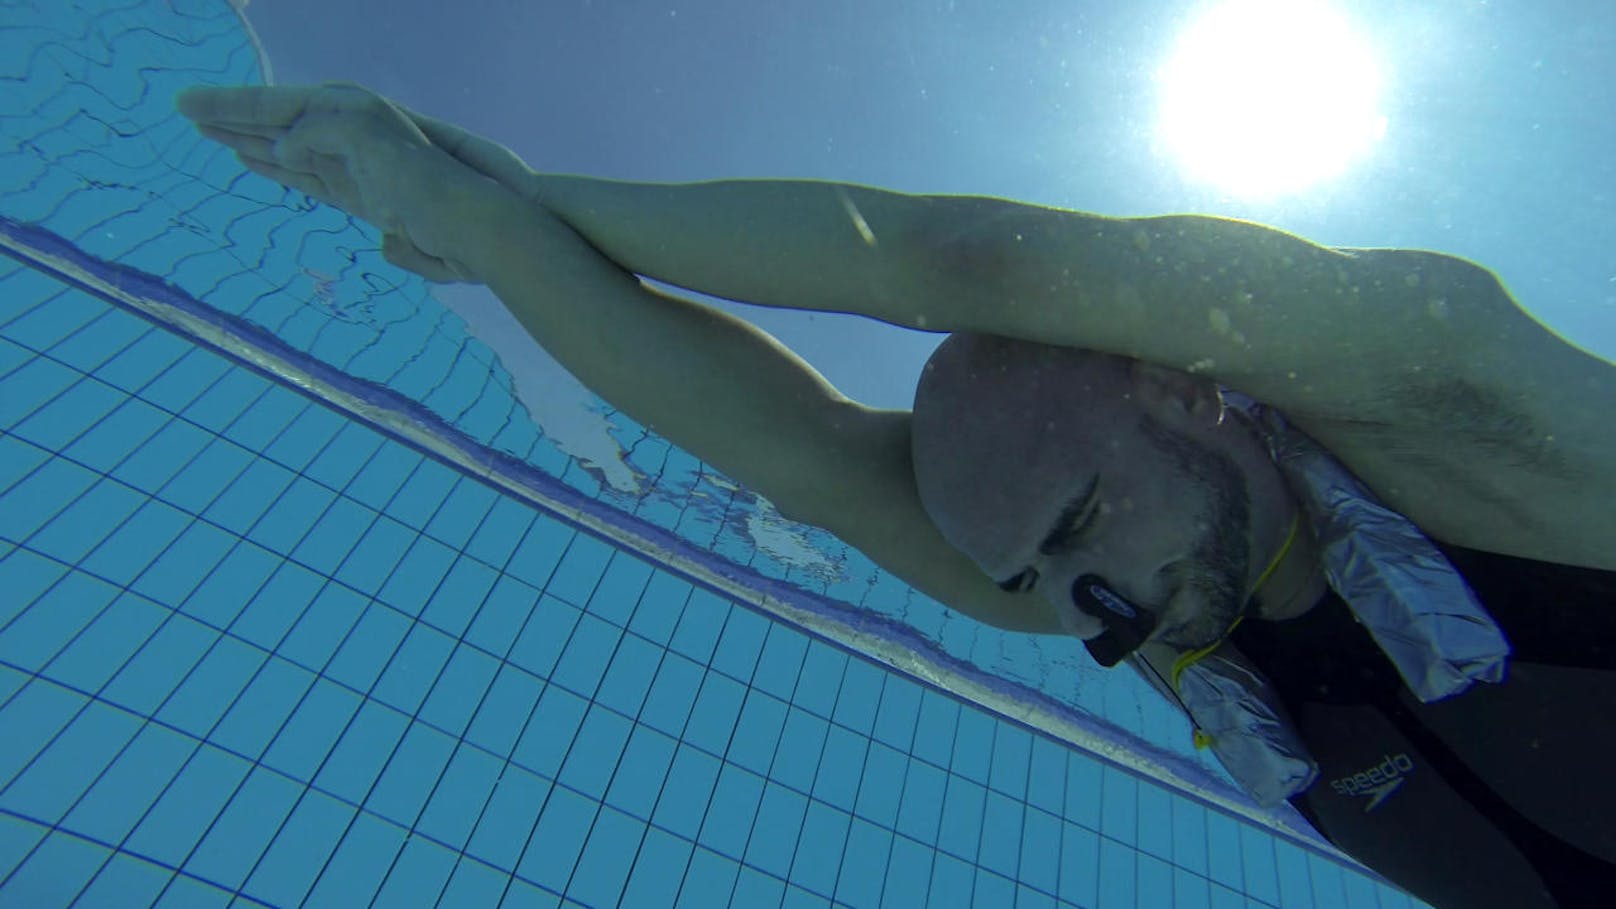 Die Doku "My life without air" raubt uns den Atem: Goran olak verbringt 22,5 Minuten unter Wasser. Als er wieder auftaucht, ist er Weltmeister. Der Free Diver hat seine Gabe des Luftanhaltens zum Beruf gemacht, und das, obwohl er im Schlaf unter Atemstillständen leidet.